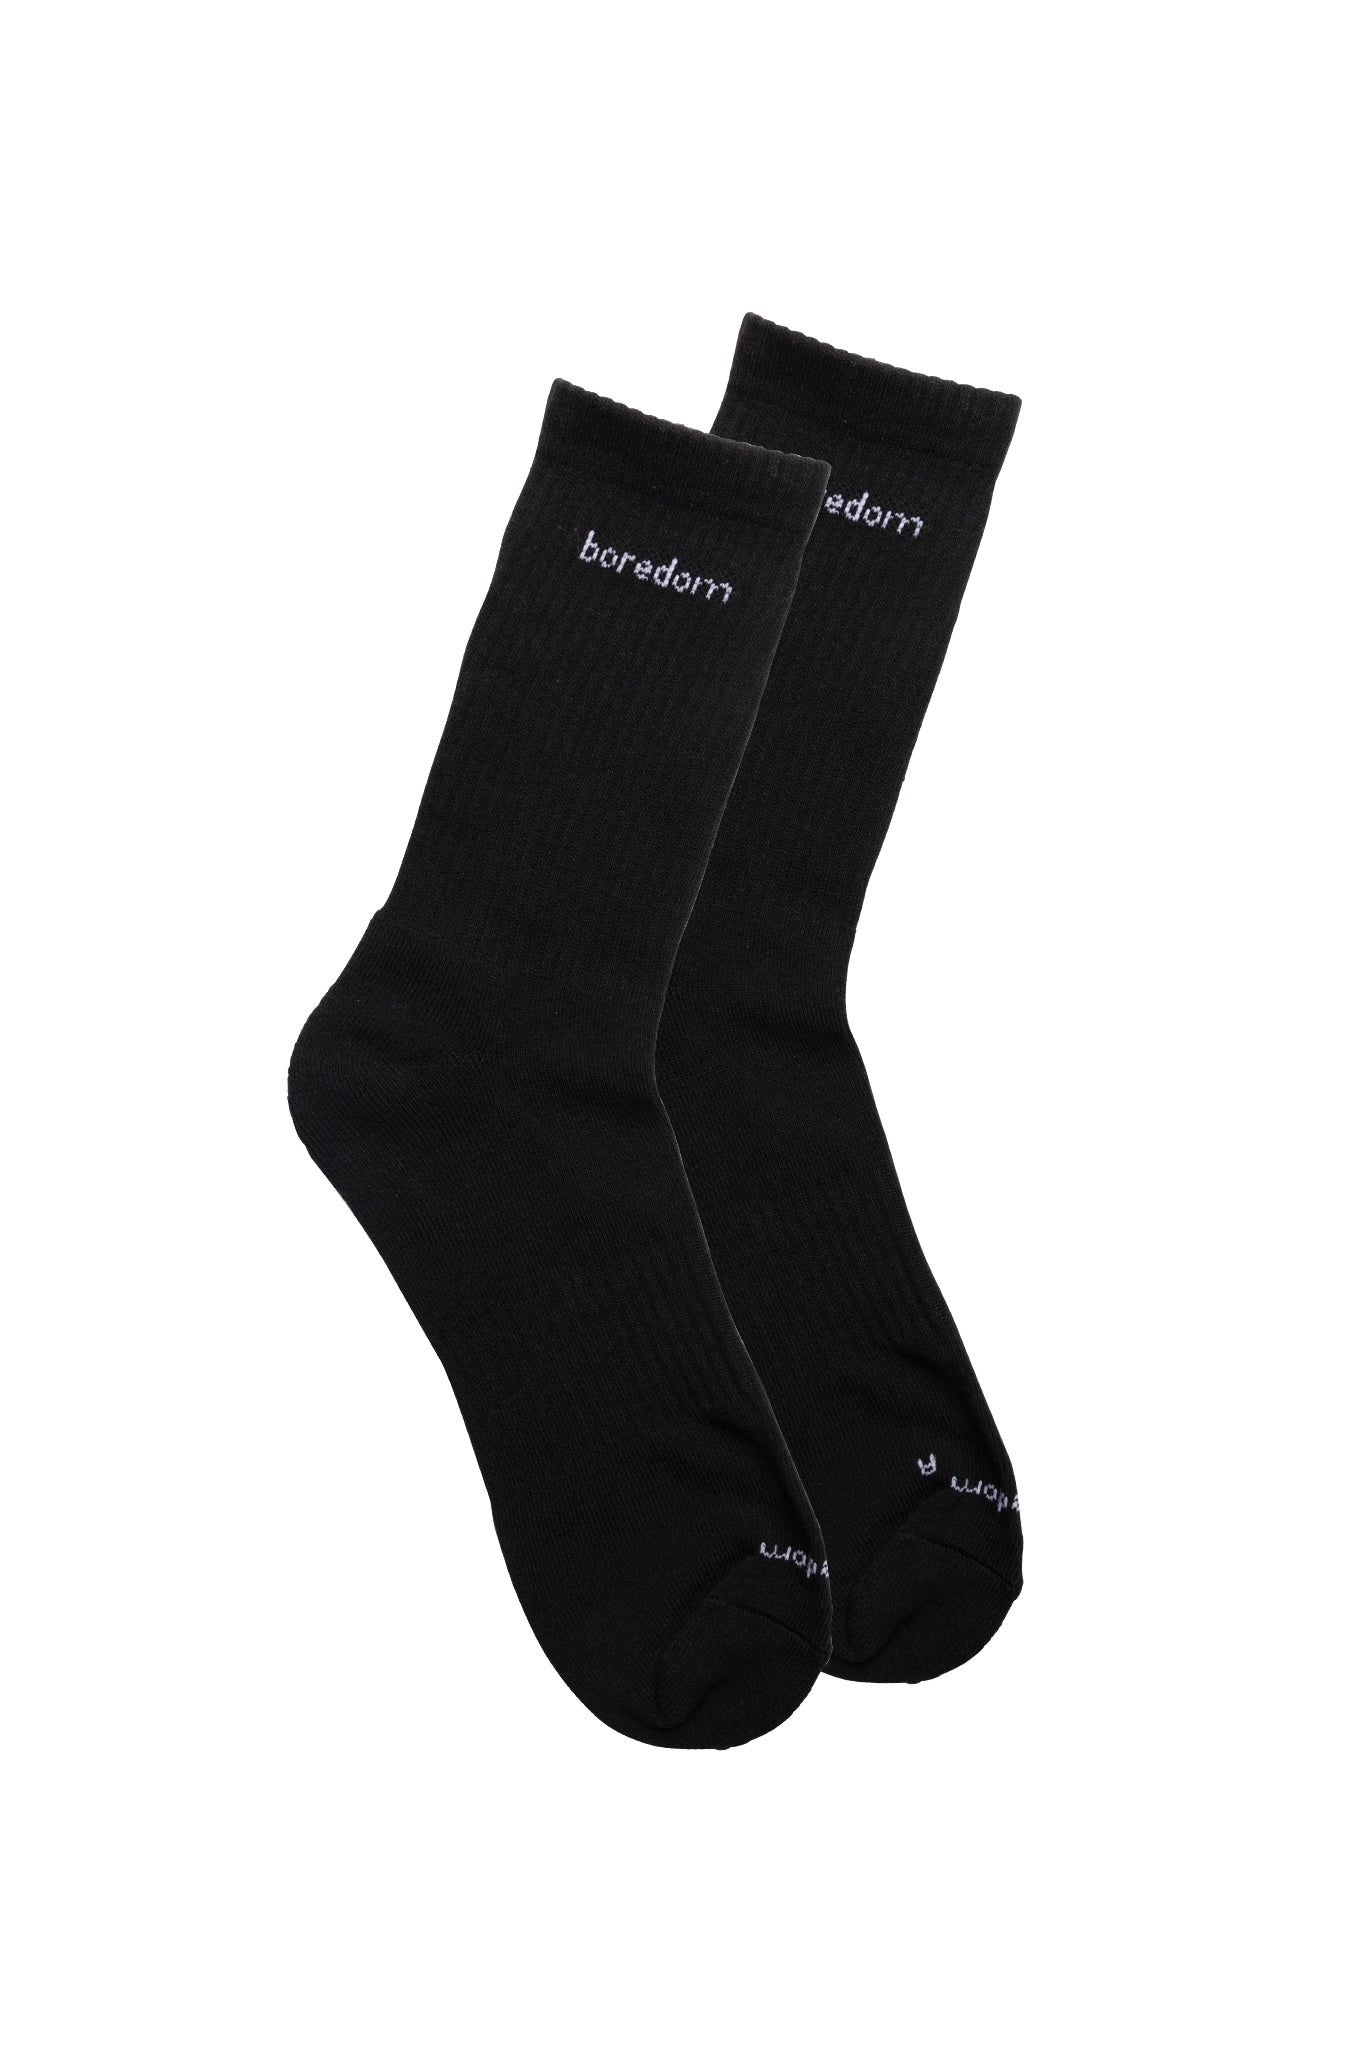 Word Mark 2-Pack of Socks - Black